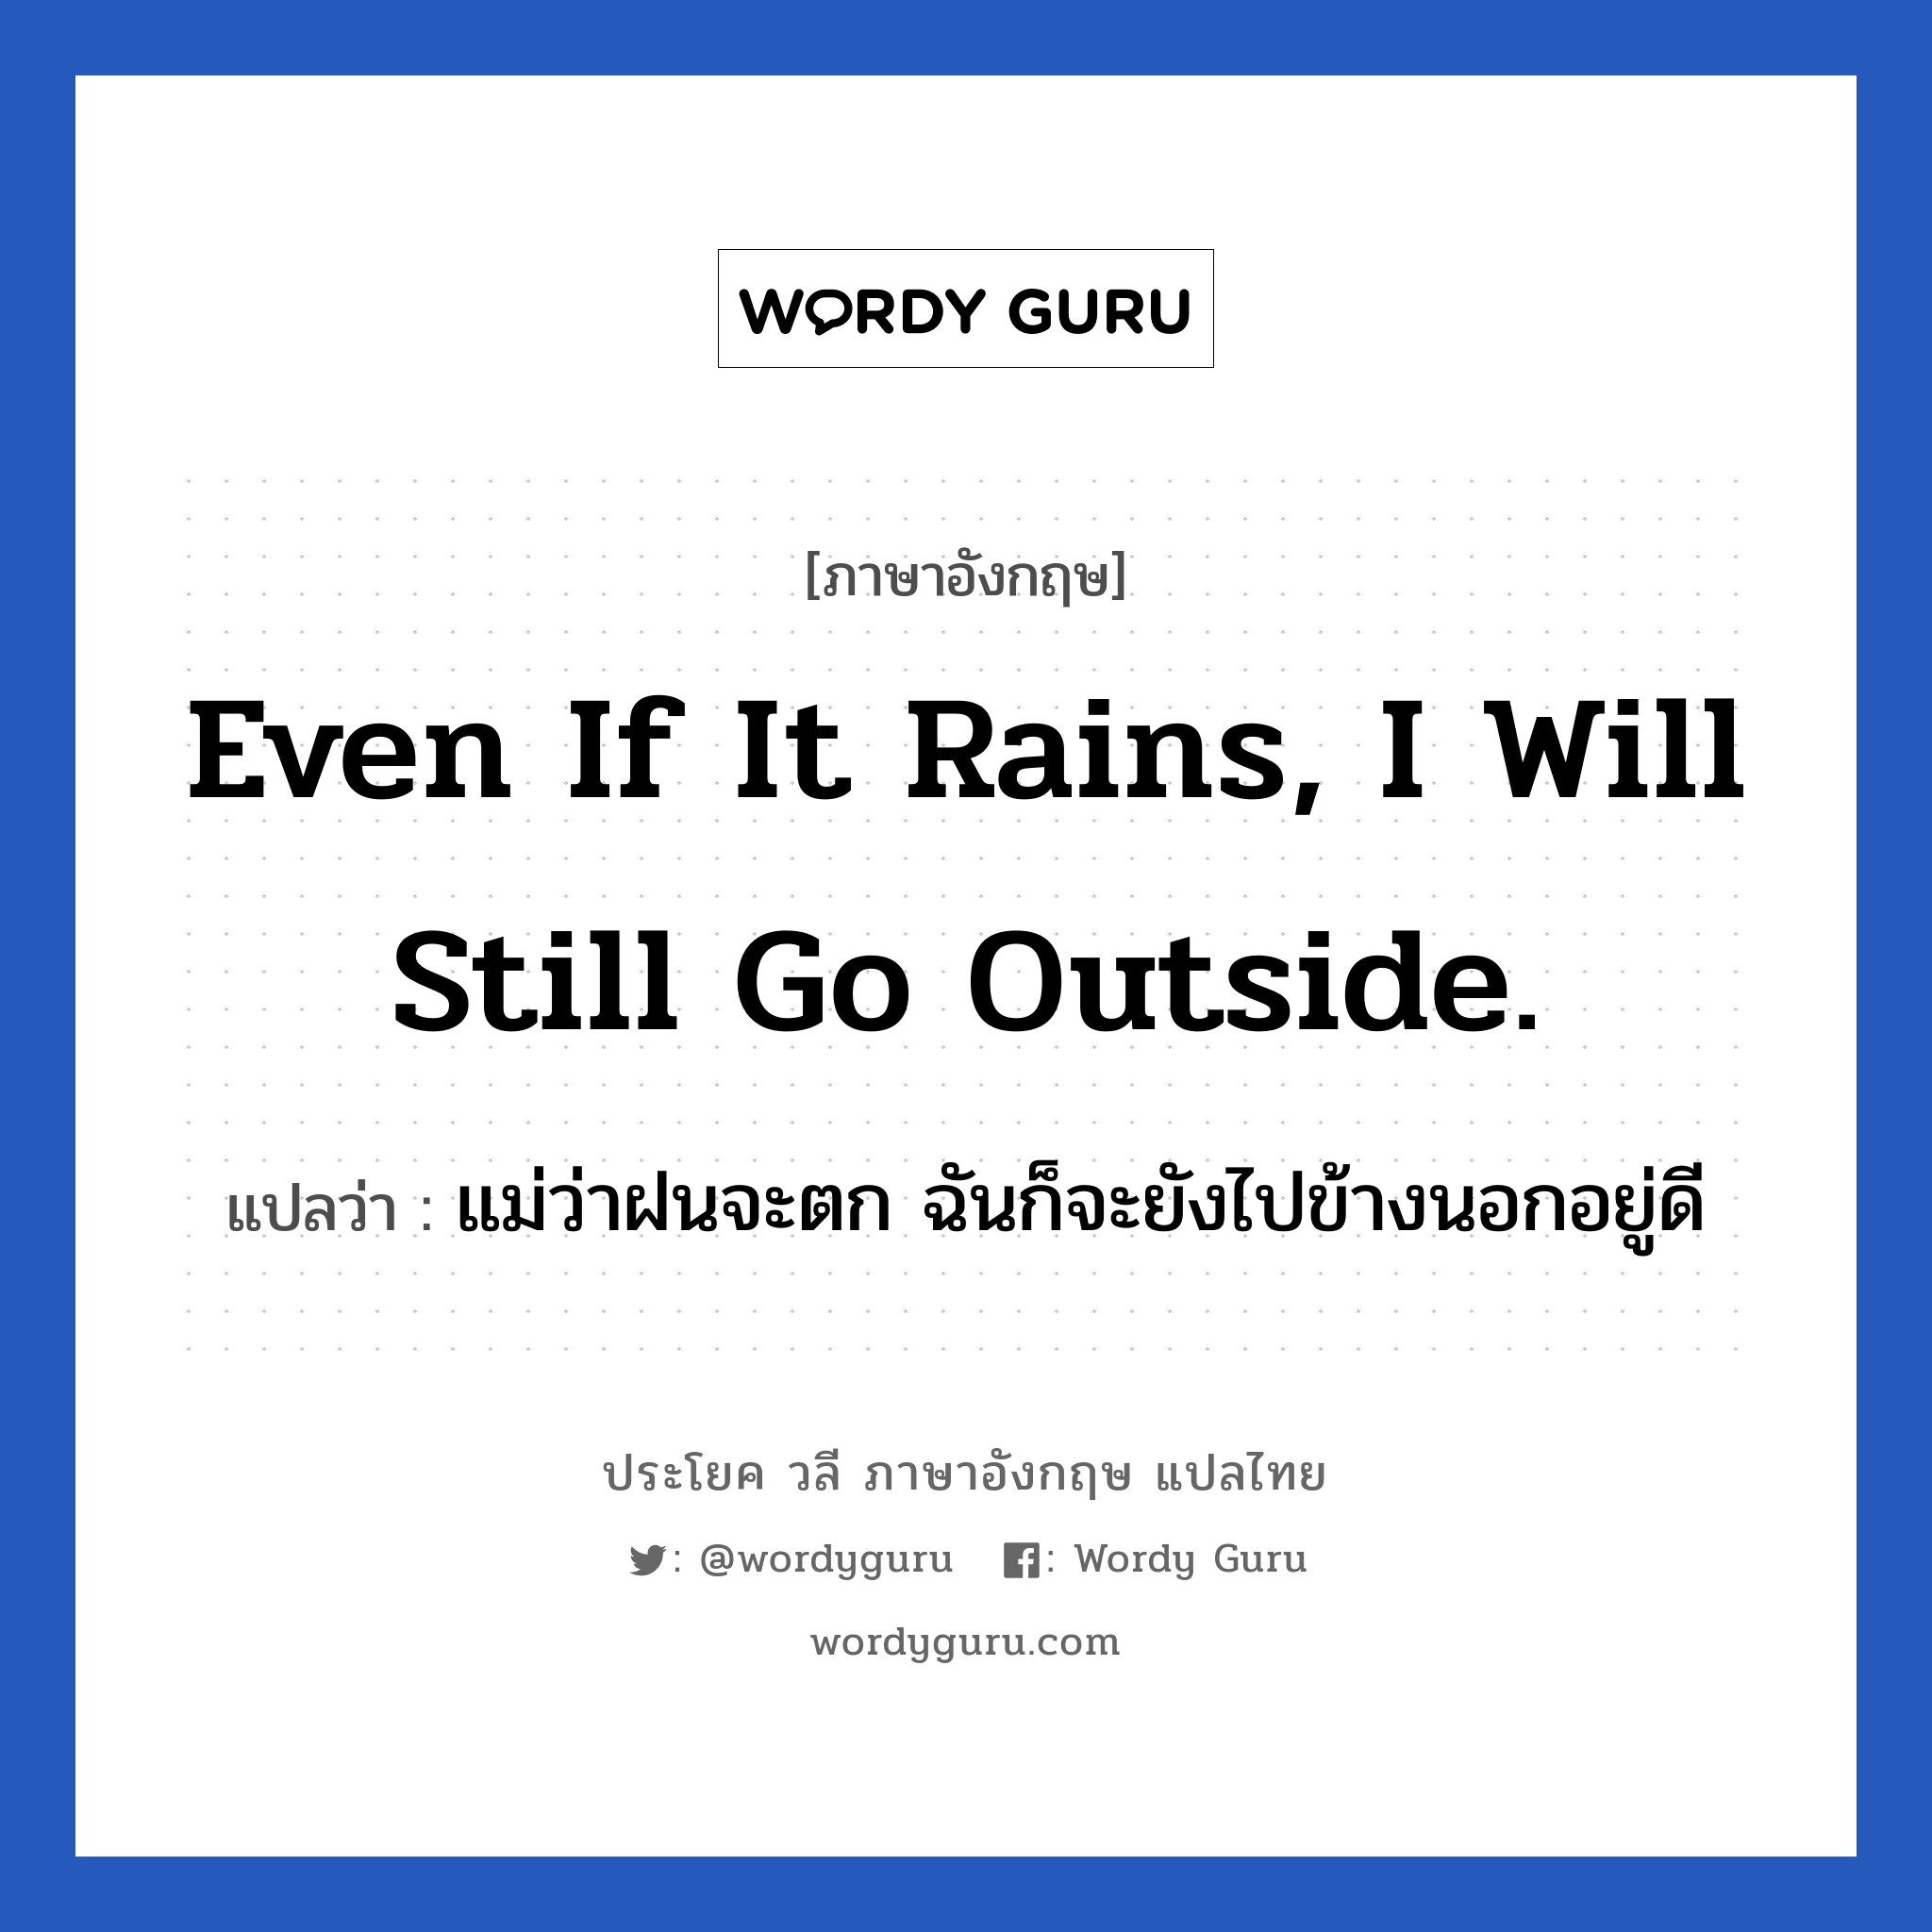 แม่ว่าฝนจะตก ฉันก็จะยังไปข้างนอกอยู่ดี ภาษาอังกฤษ?, วลีภาษาอังกฤษ แม่ว่าฝนจะตก ฉันก็จะยังไปข้างนอกอยู่ดี แปลว่า Even if it rains, I will still go outside.